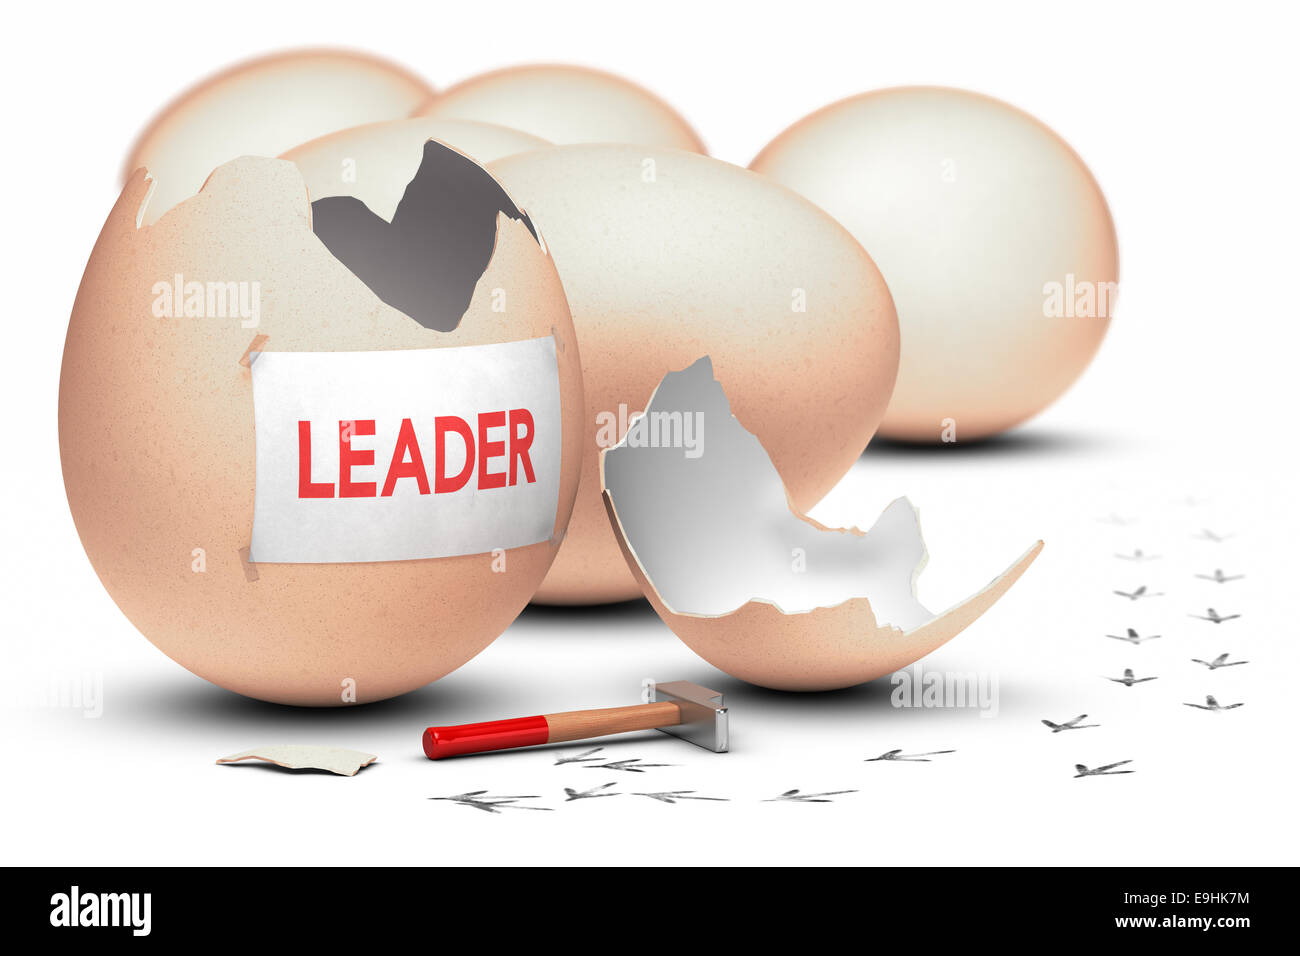 Un uovo rotto con un martello con la parola leader scritto su un foglio di carta, il concetto di immagine per immagine di leadership. Foto Stock